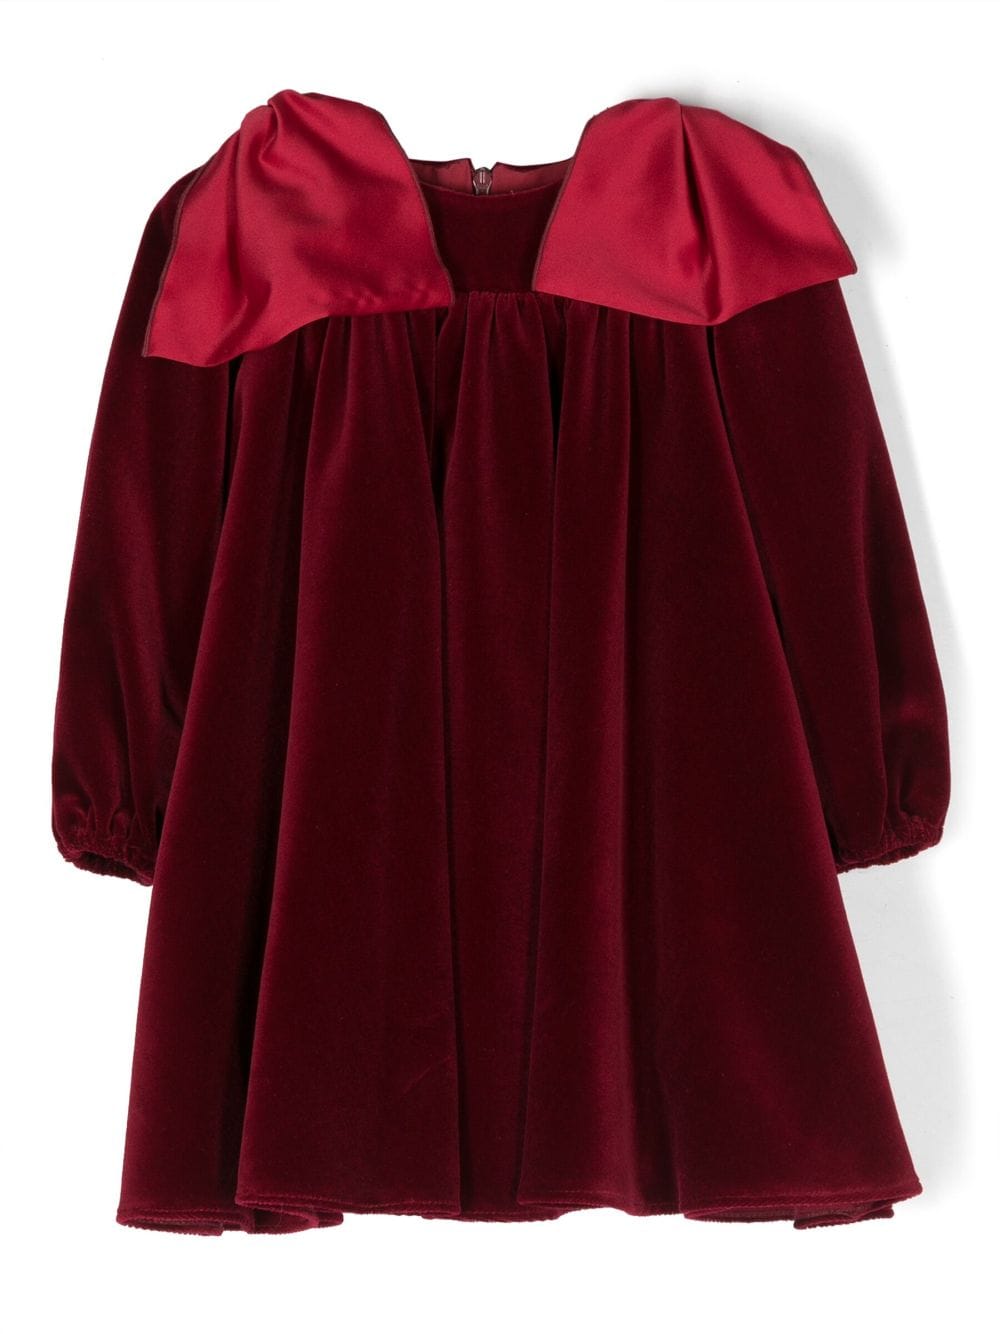 La Stupenderia Babies' Bow-detailing Velvet-finish Dress In Red